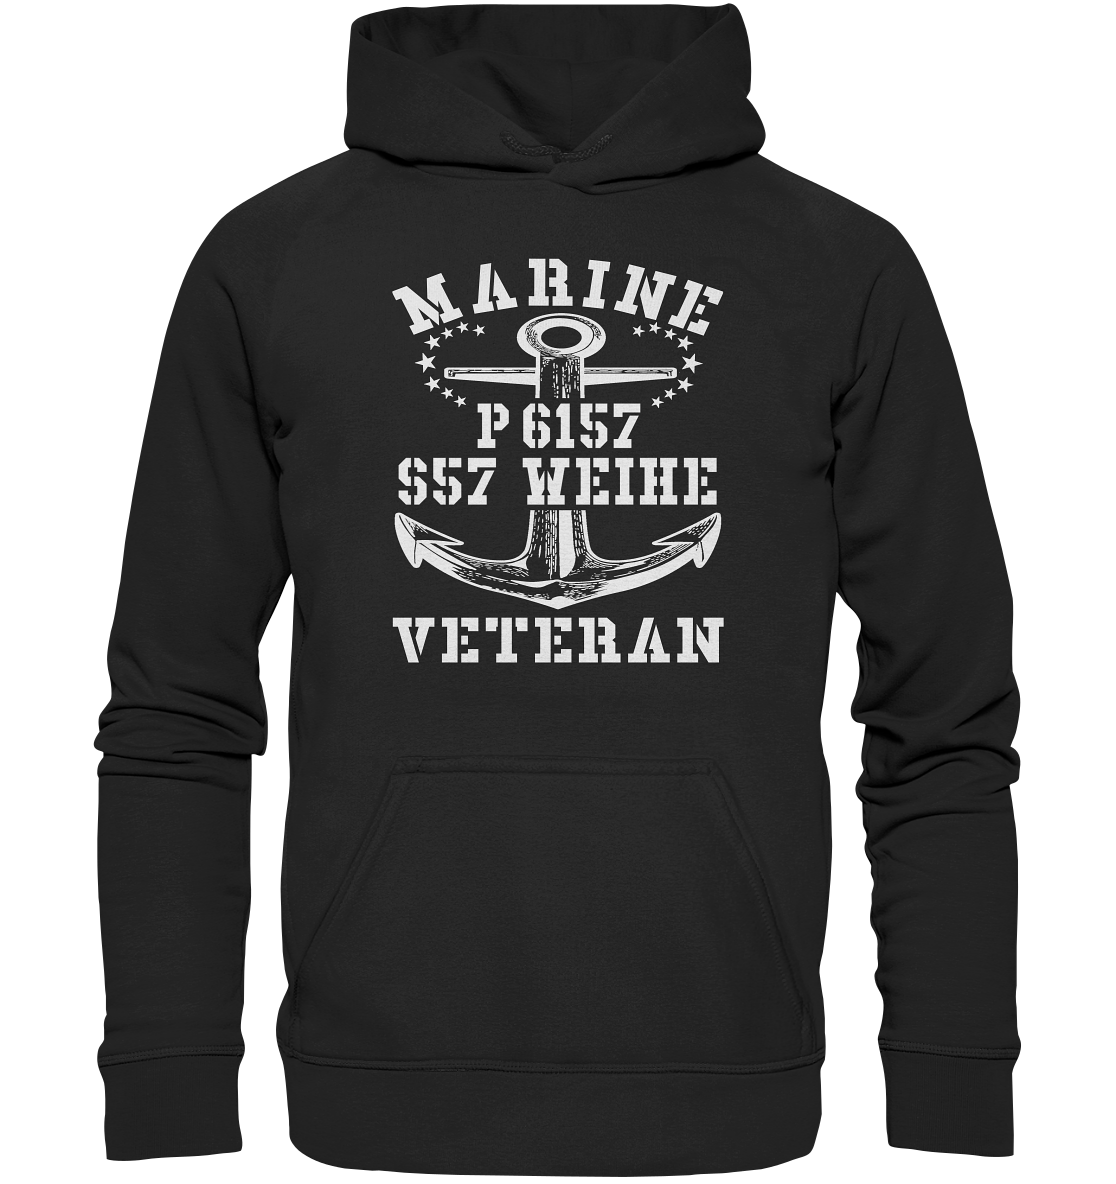 P6157 S57 WEIHE Marine Veteran - Basic Unisex Hoodie